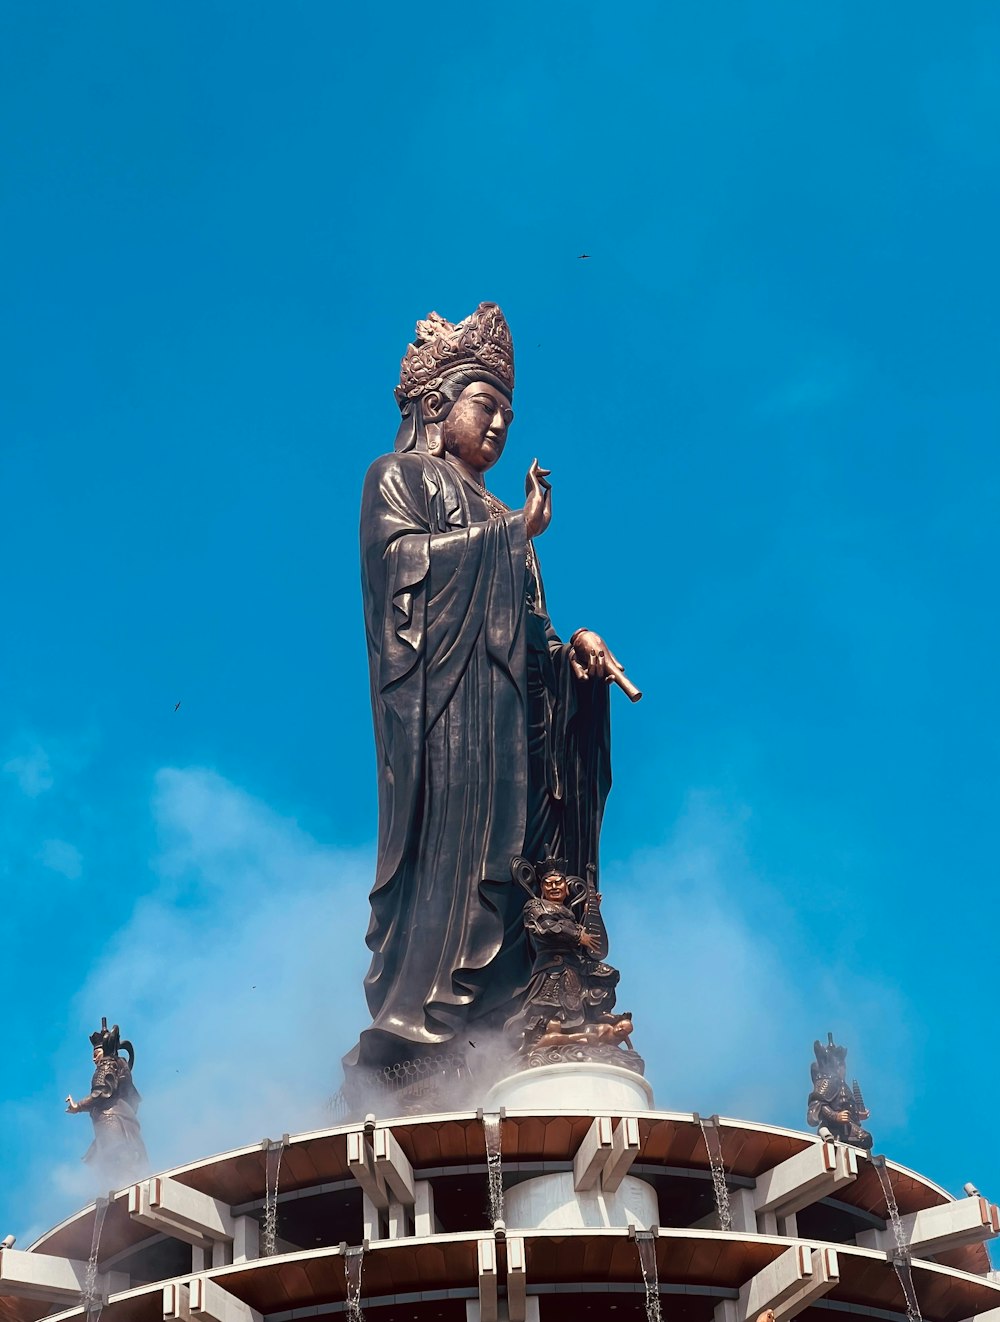 Eine Statue auf dem Dach eines Gebäudes mit blauem Himmel im Hintergrund